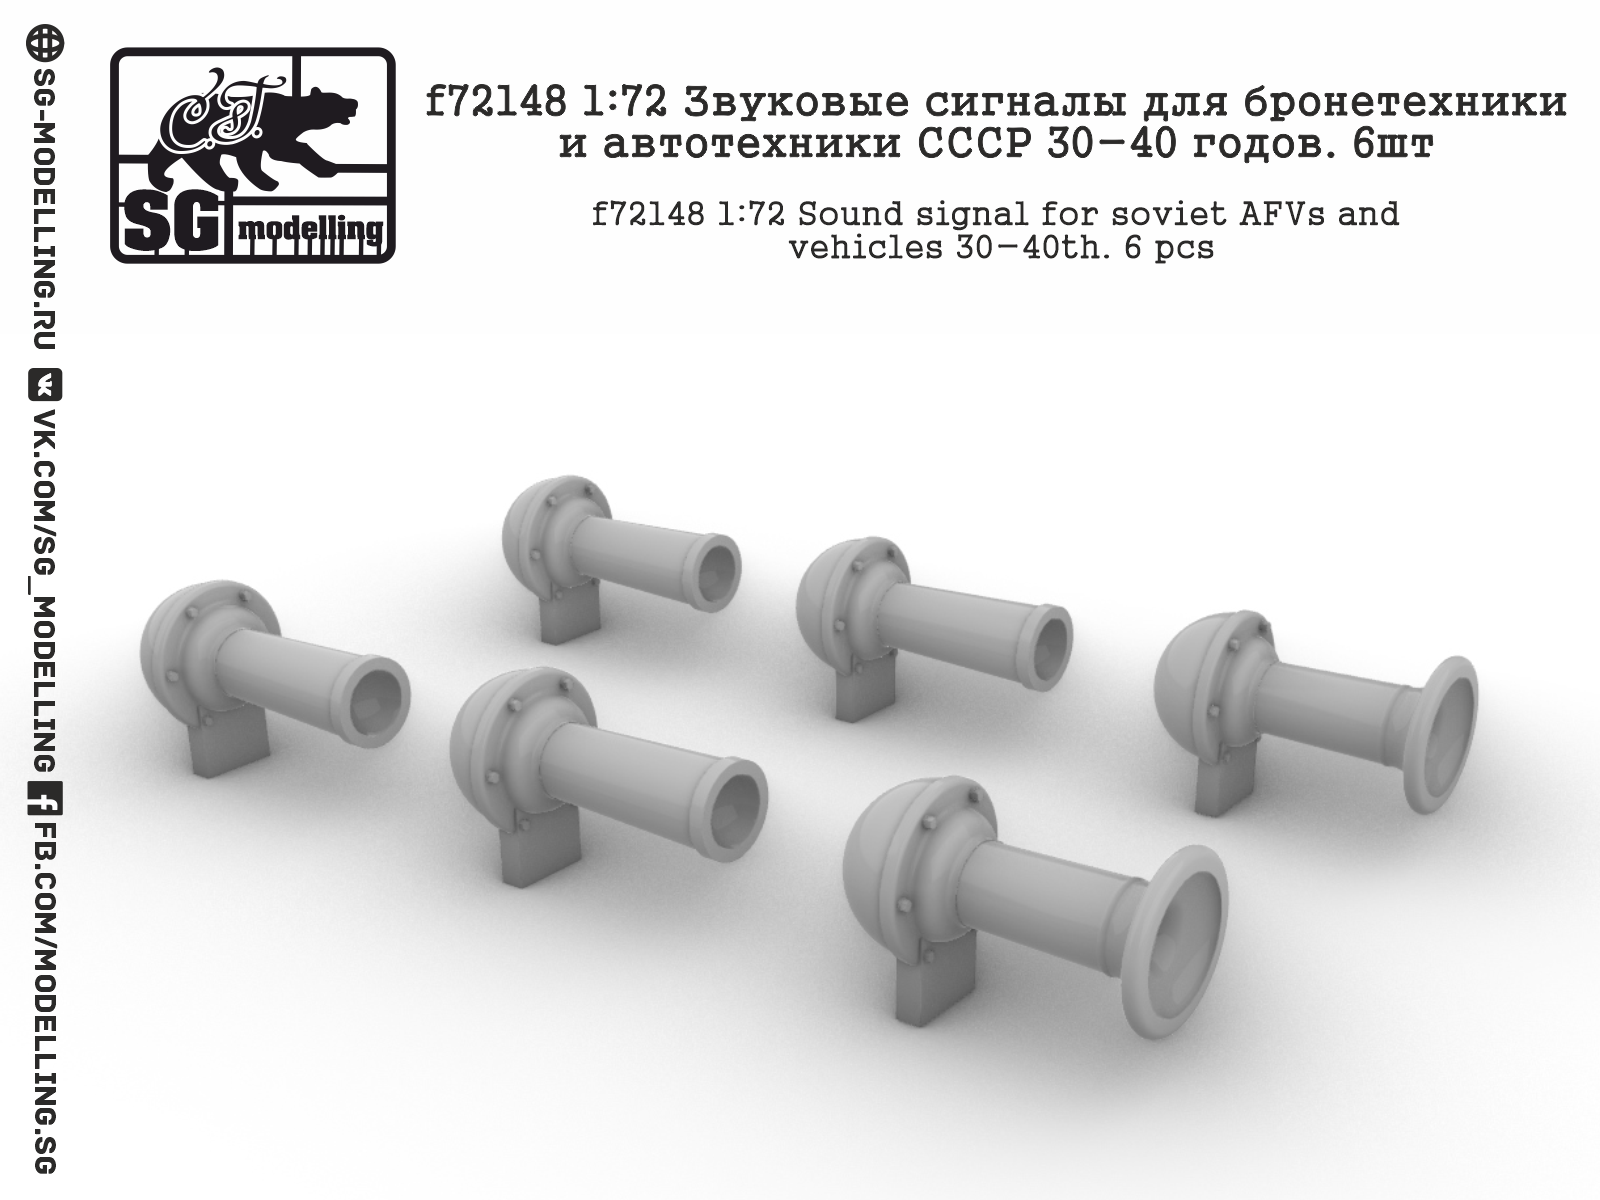 f72148  дополнения из смолы  Звуковые сигналы для техники СССР 30-40 годов.6шт  (1:72)